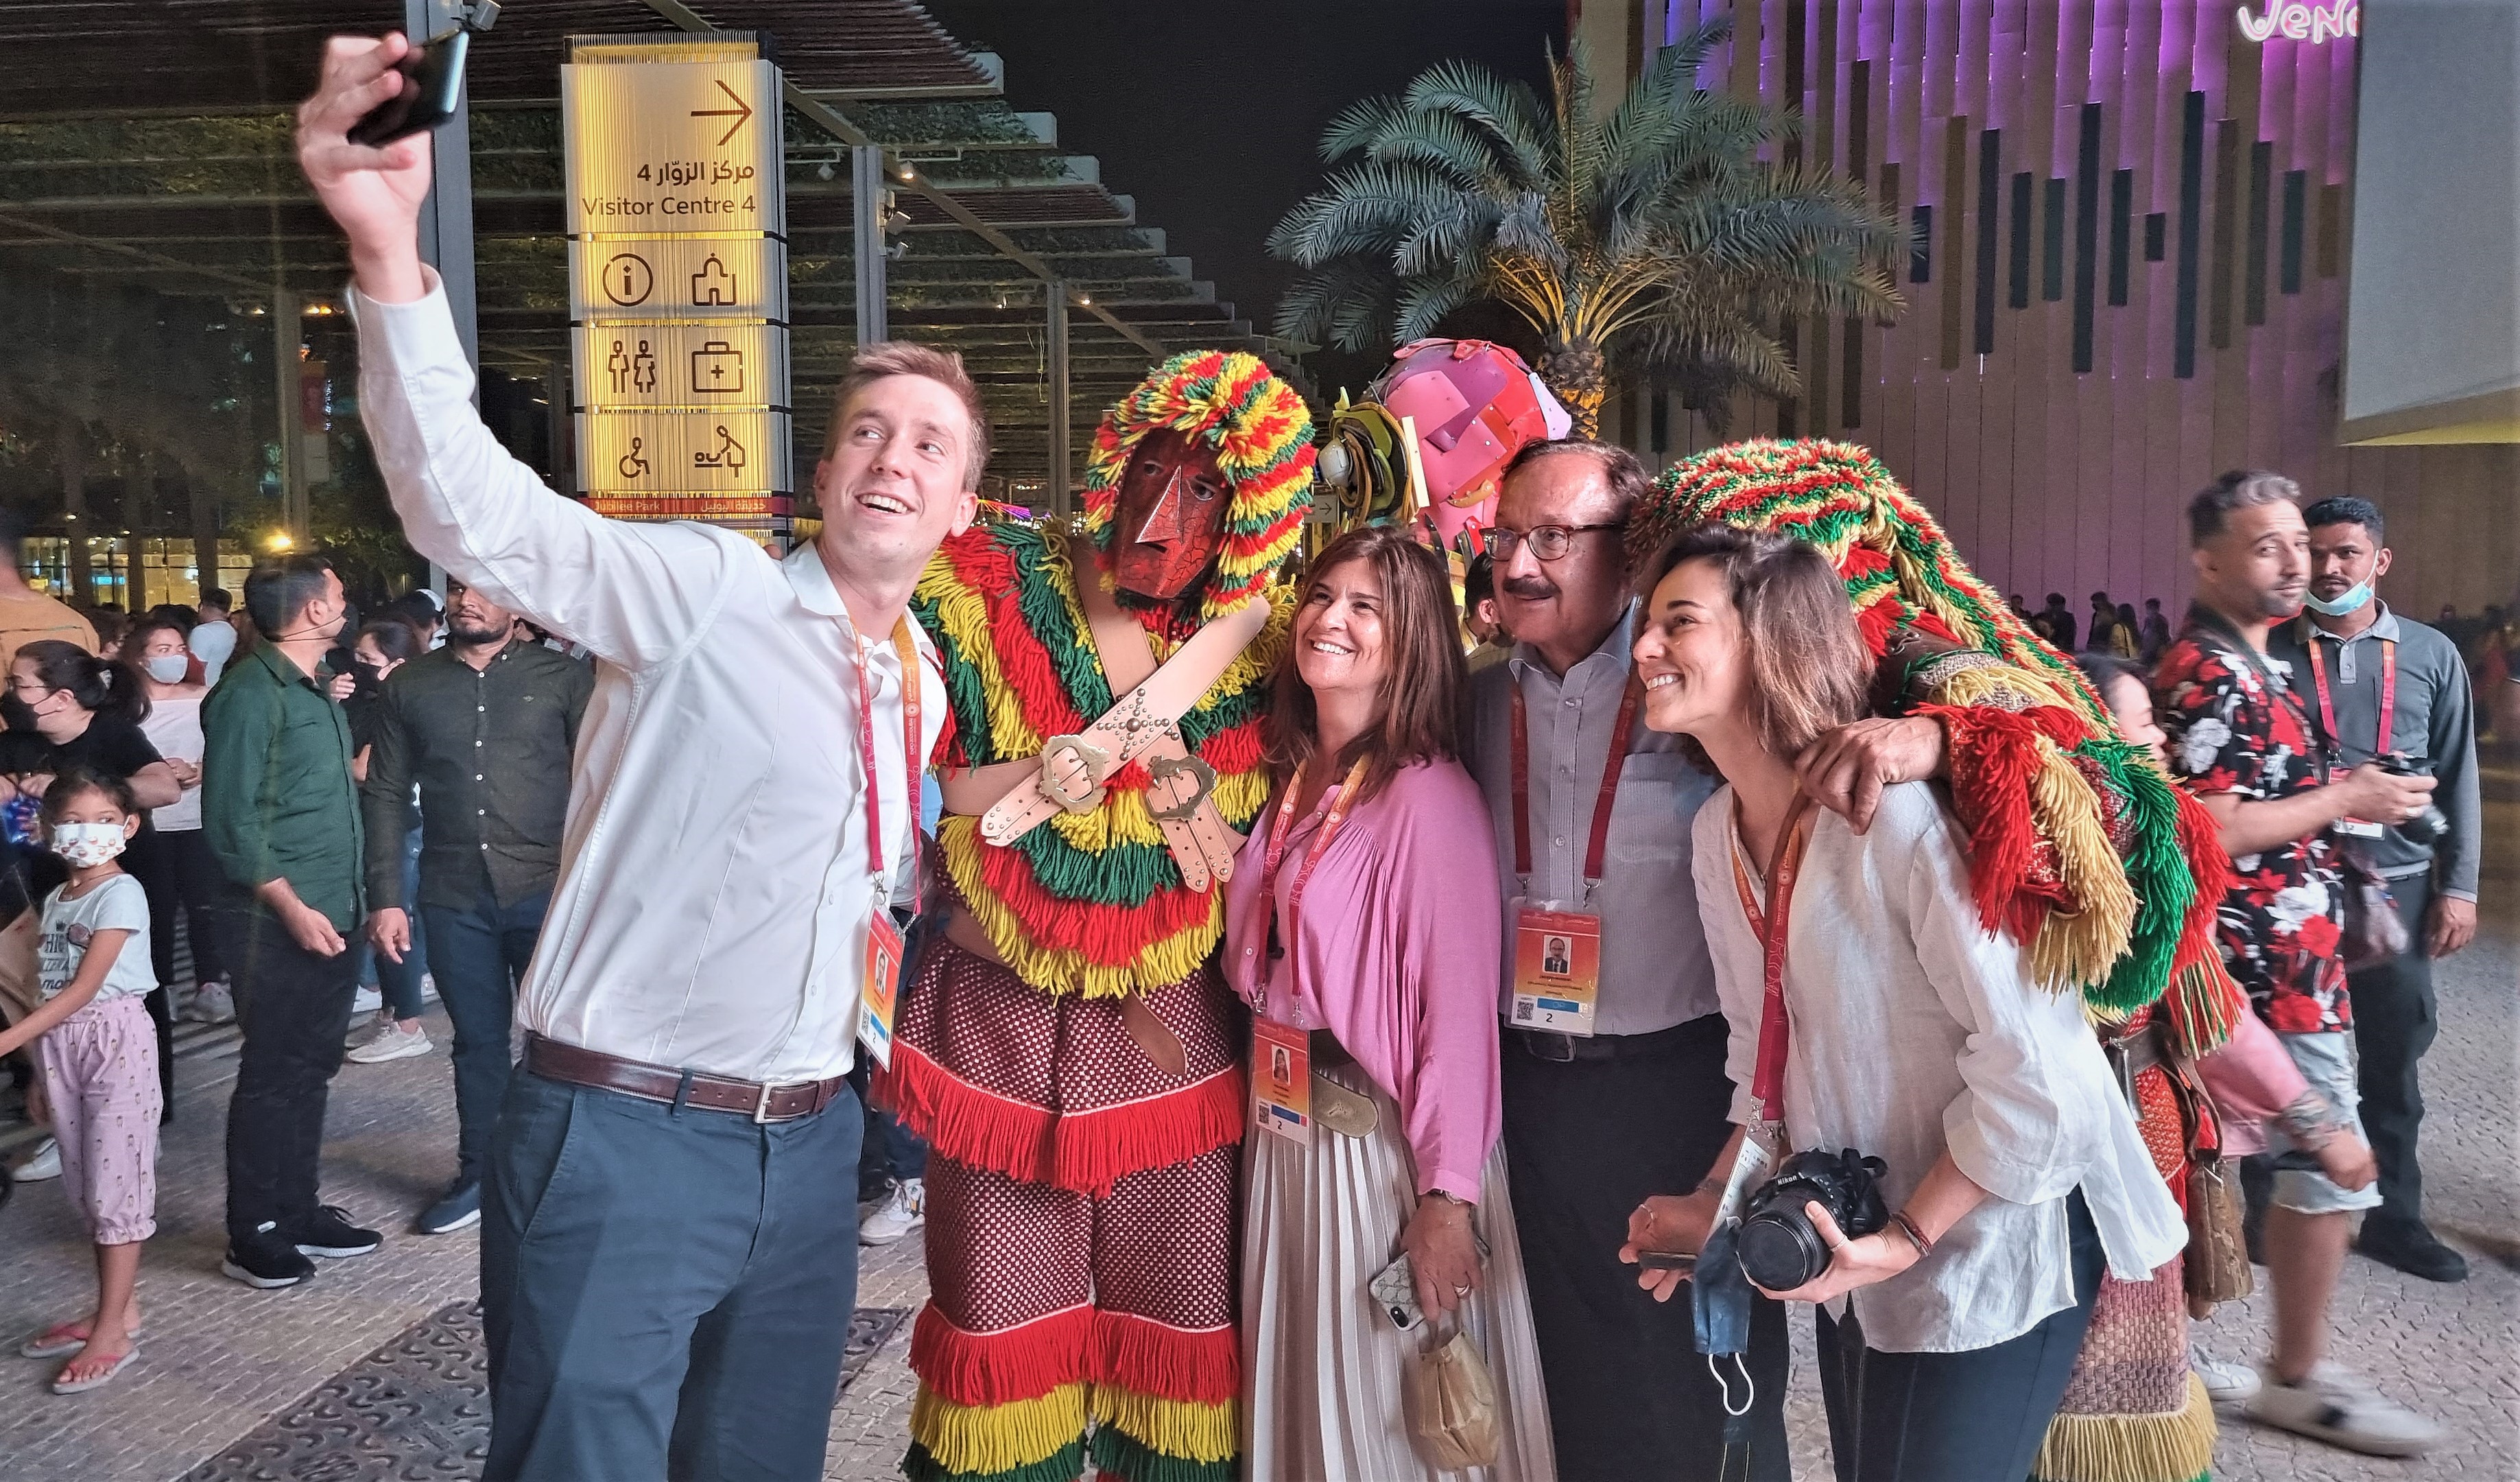 Os Caretos enobreceram a imagem de Portugal na Expo Dubai